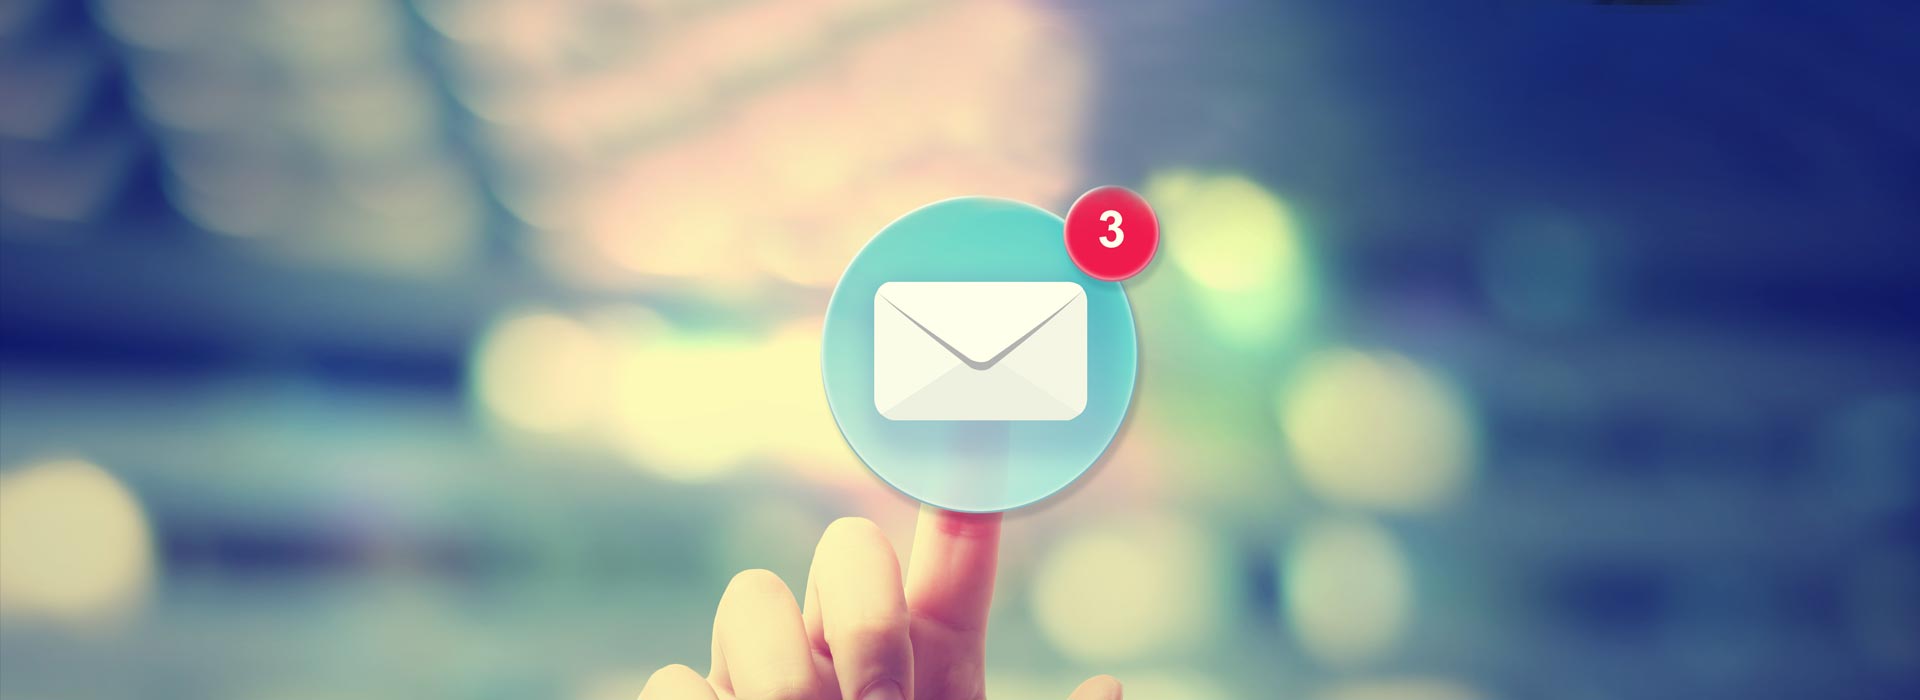 Imagem ilustrativa: dedo toca ícone de aplicativo de e-mail